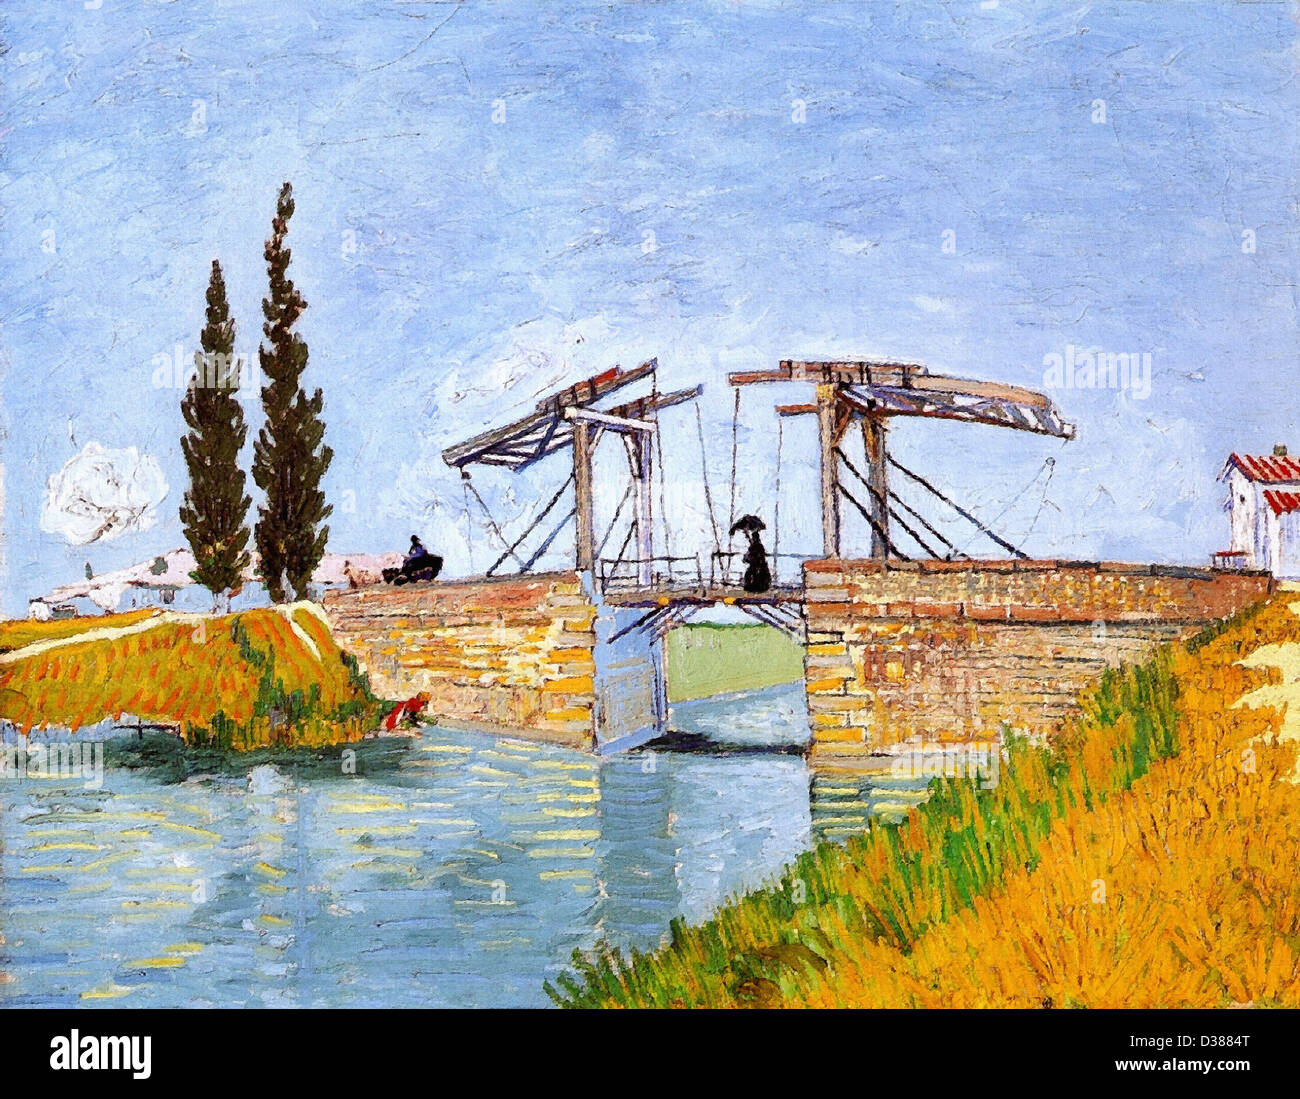 Vincent van Gogh, The Langlois Bridge. 1888. Japonism. Oil on canvas. Wallraf-Richartz Museum, Cologne, Germany. Stock Photo